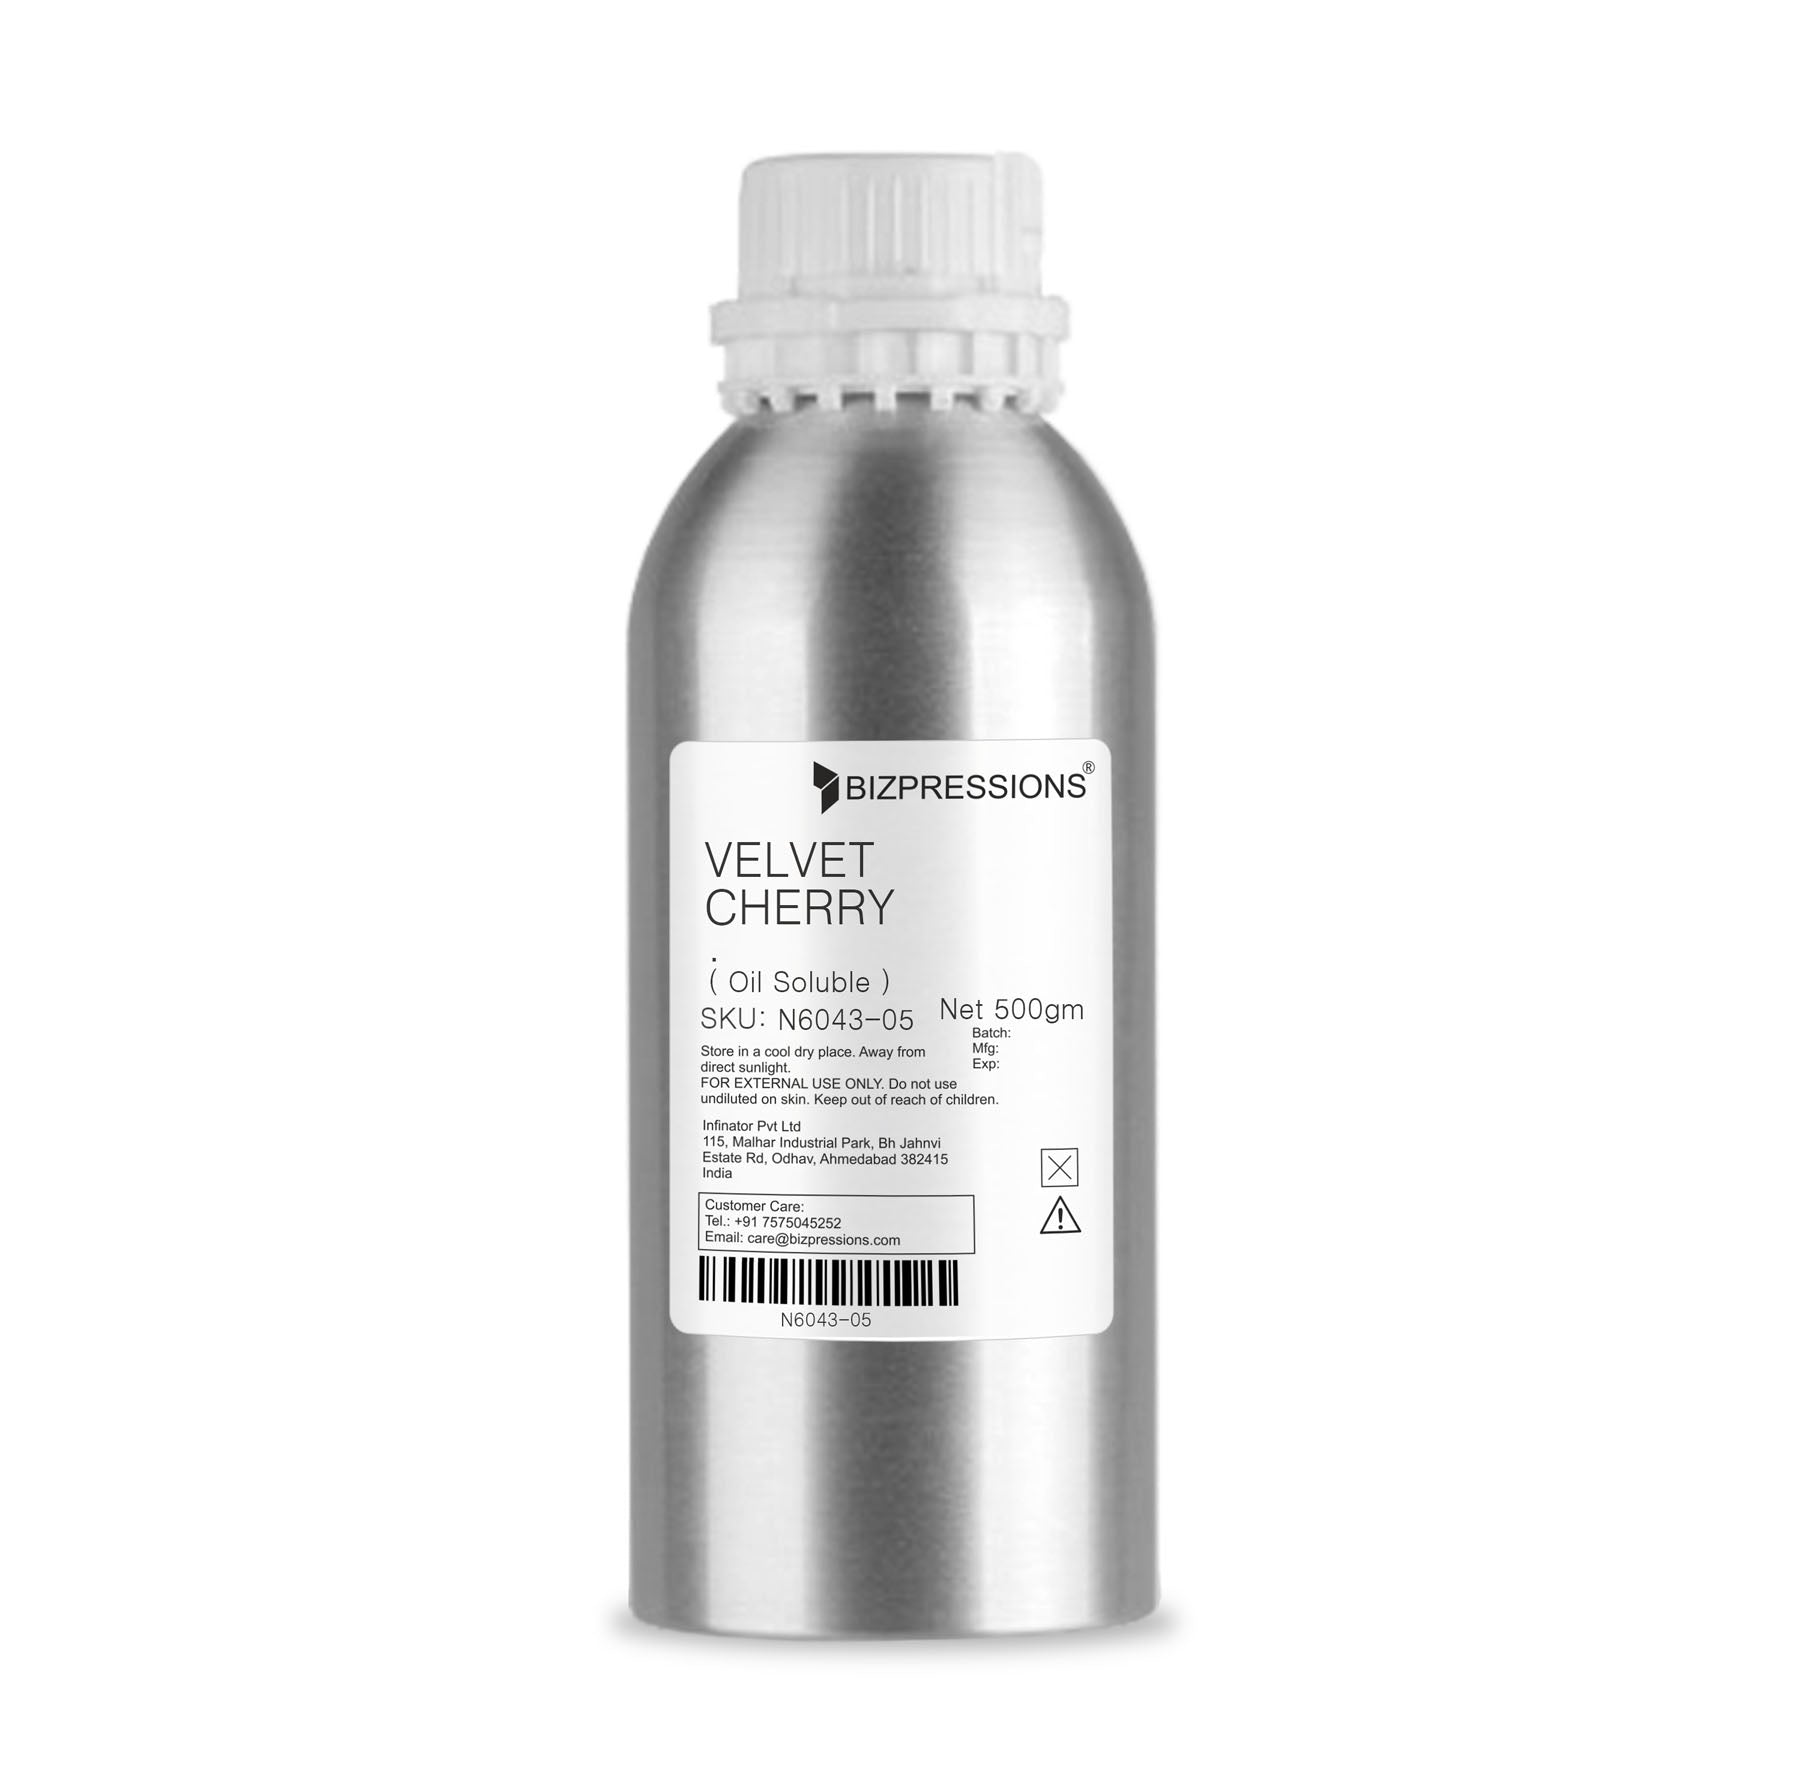 VELVET CHERRY - Fragrance ( Oil Soluble ) - 500 gm